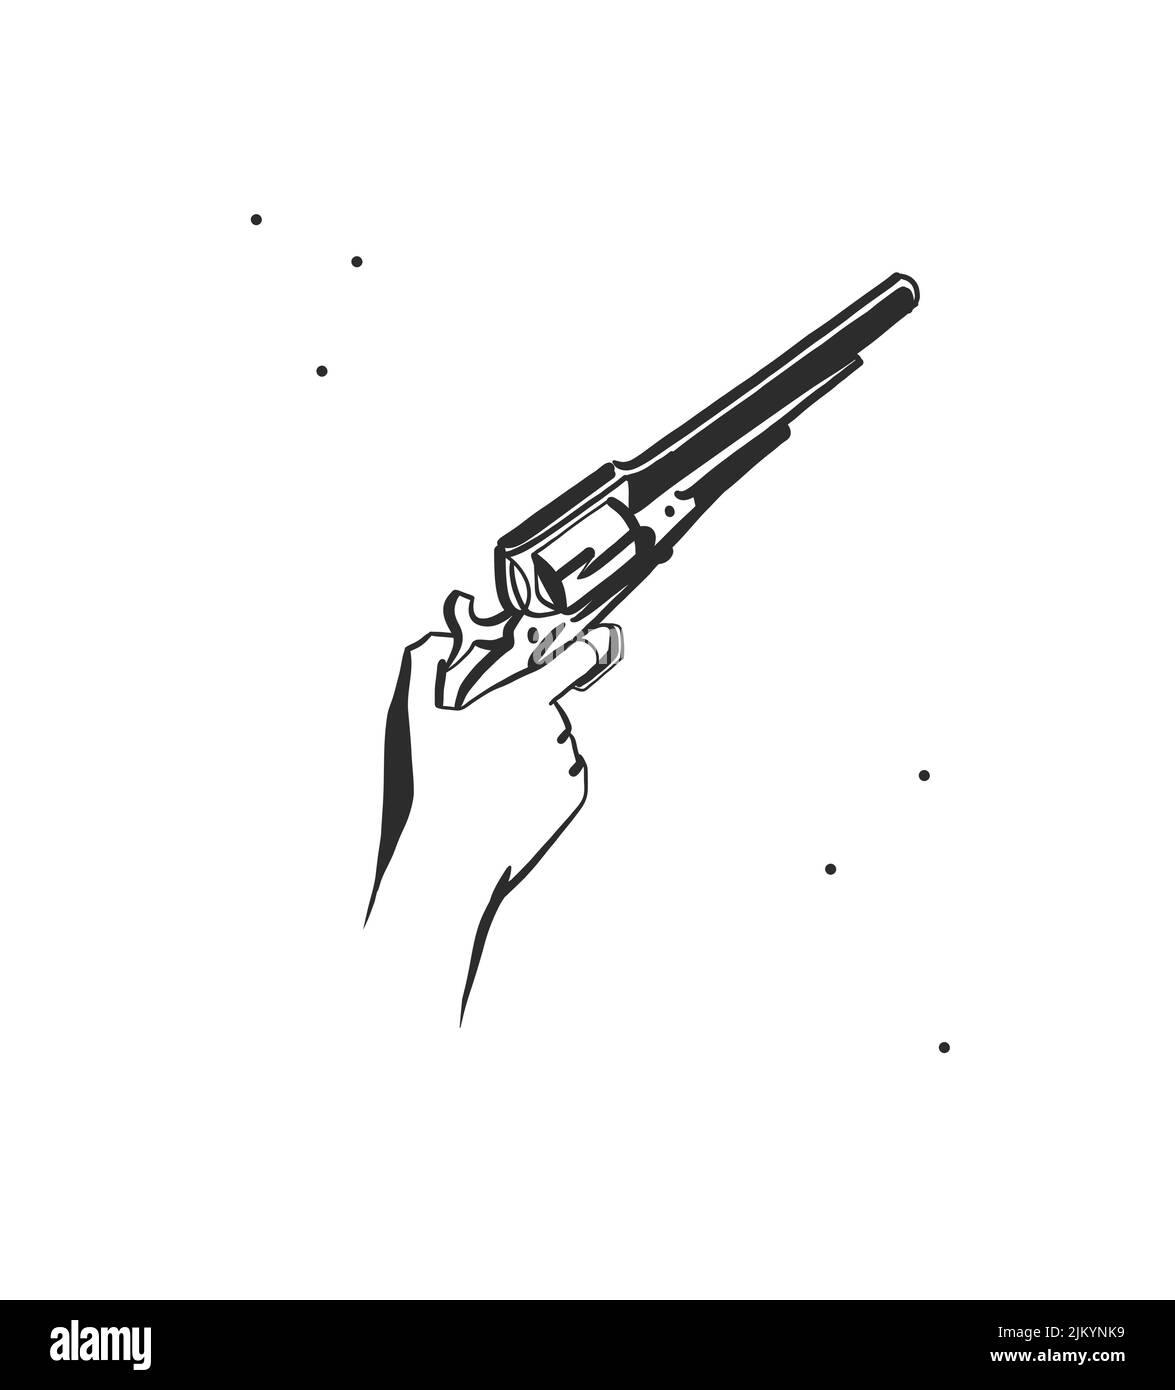 Hand gezeichnet abstrakt Vektor Grafik Clipart Illustration boho Hand hält die Waffe.Western weiblich Design concept.Bohemian wilden Westen zeitgenössische Kunst Stock Vektor